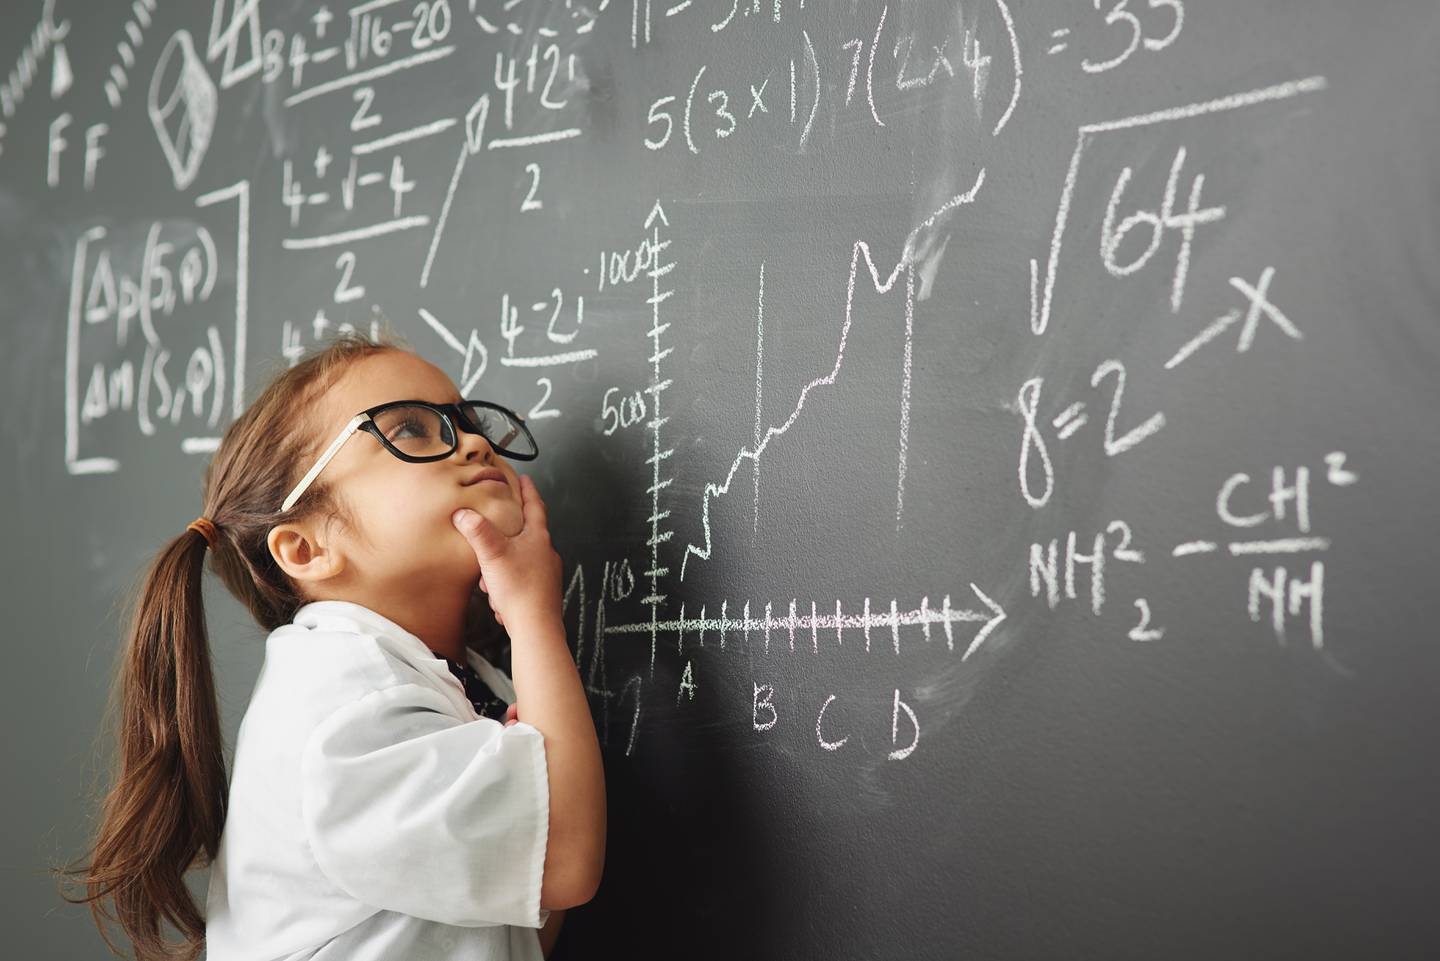 Niños muy inteligentes, superdotados, inteligencia, estudios, mente brillante, fotografía fines ilustrativos Shutterstock